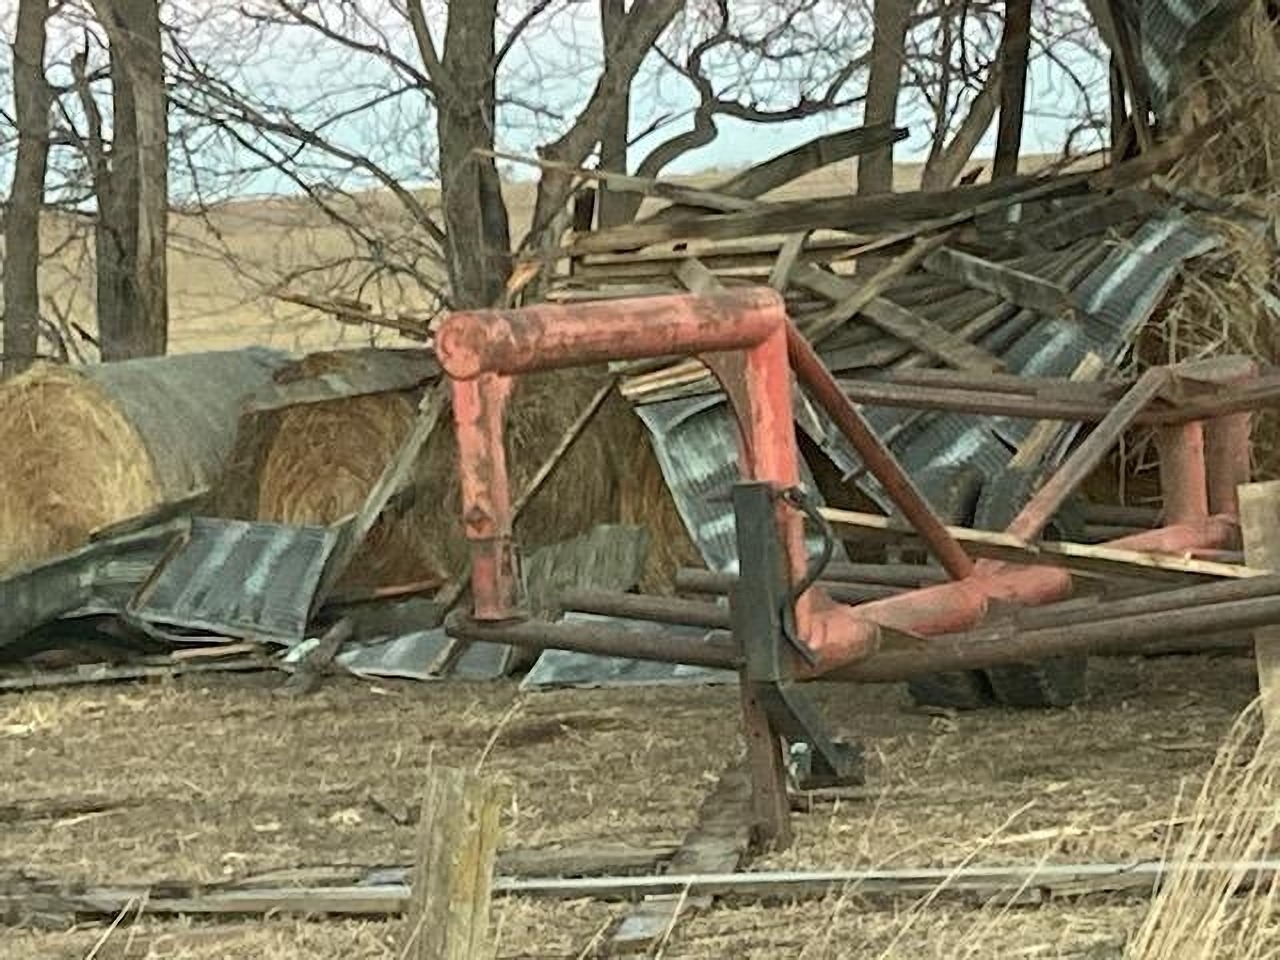 Destruction on Marty Danzer's farm.